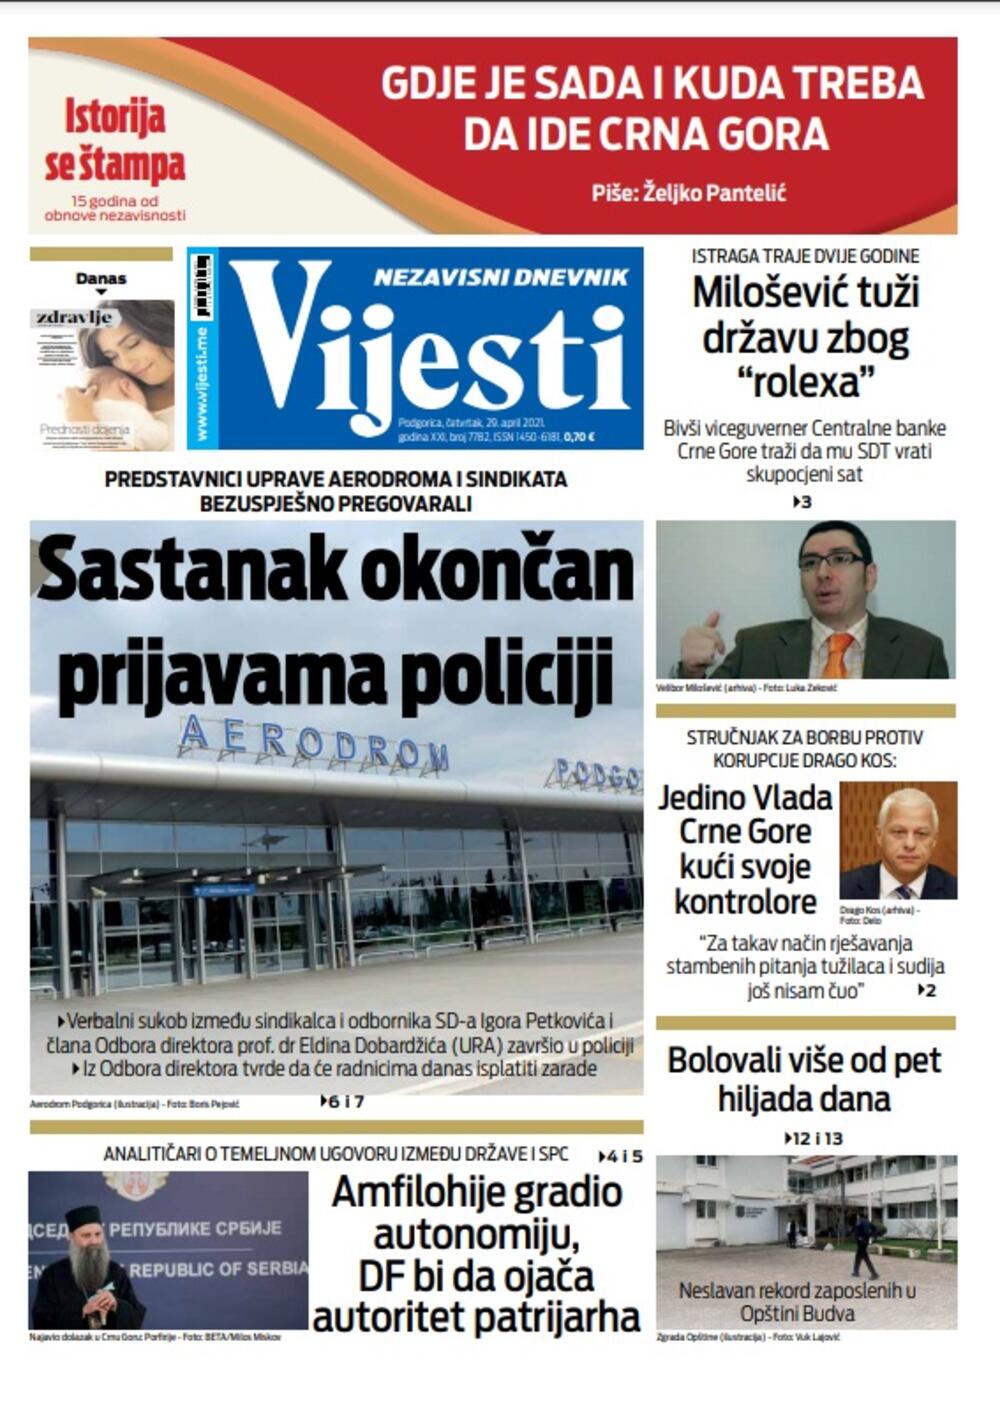 Naslovna strana Vijesti za 29. april 2021., Foto: Vijesti